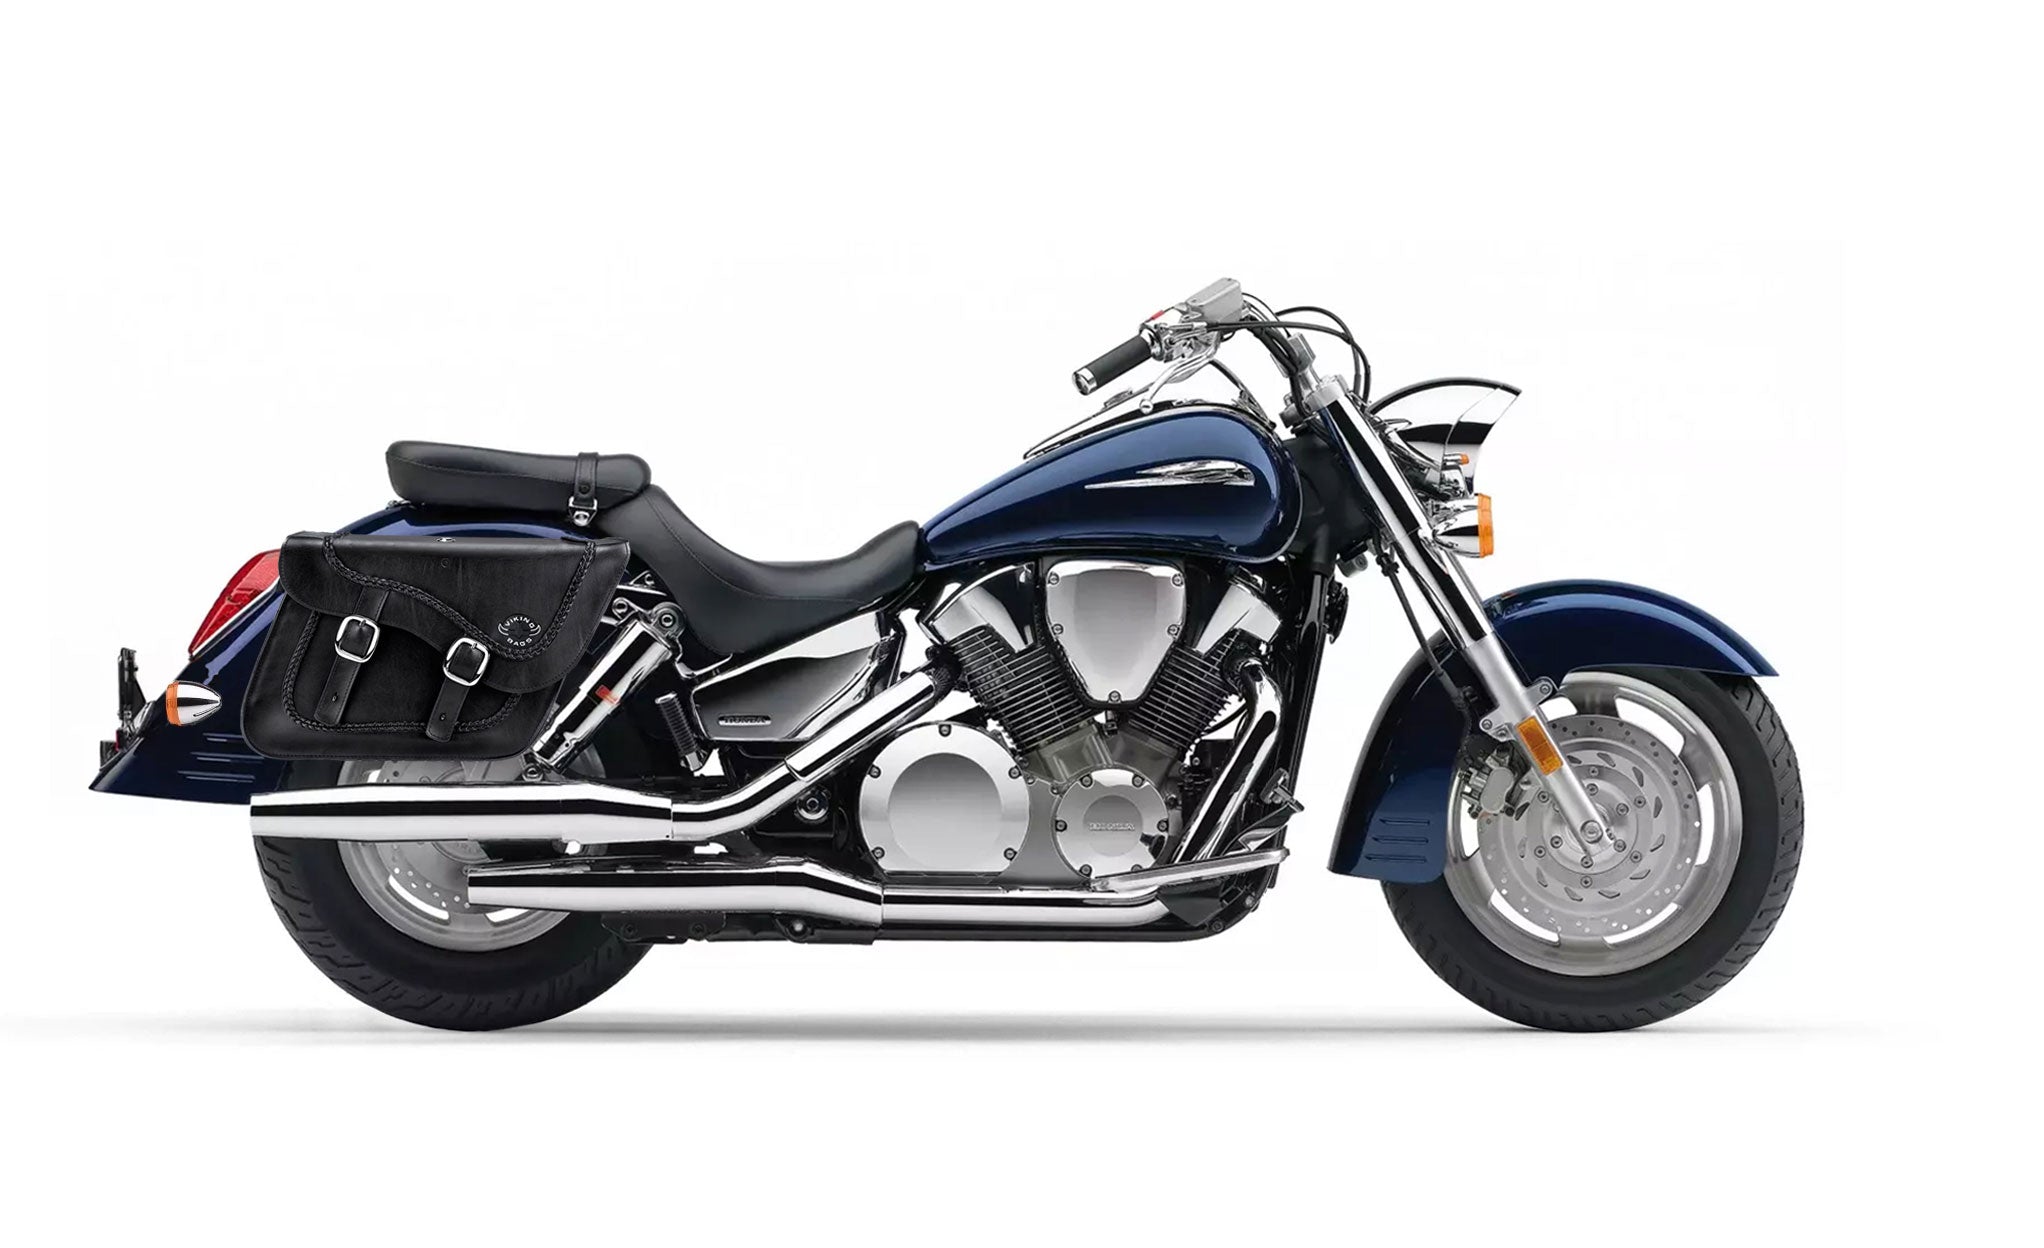 Viking Americano Honda Vtx 1300 R Retro Braided Large Leather Motorcycle Saddlebags on Bike Photo @expand